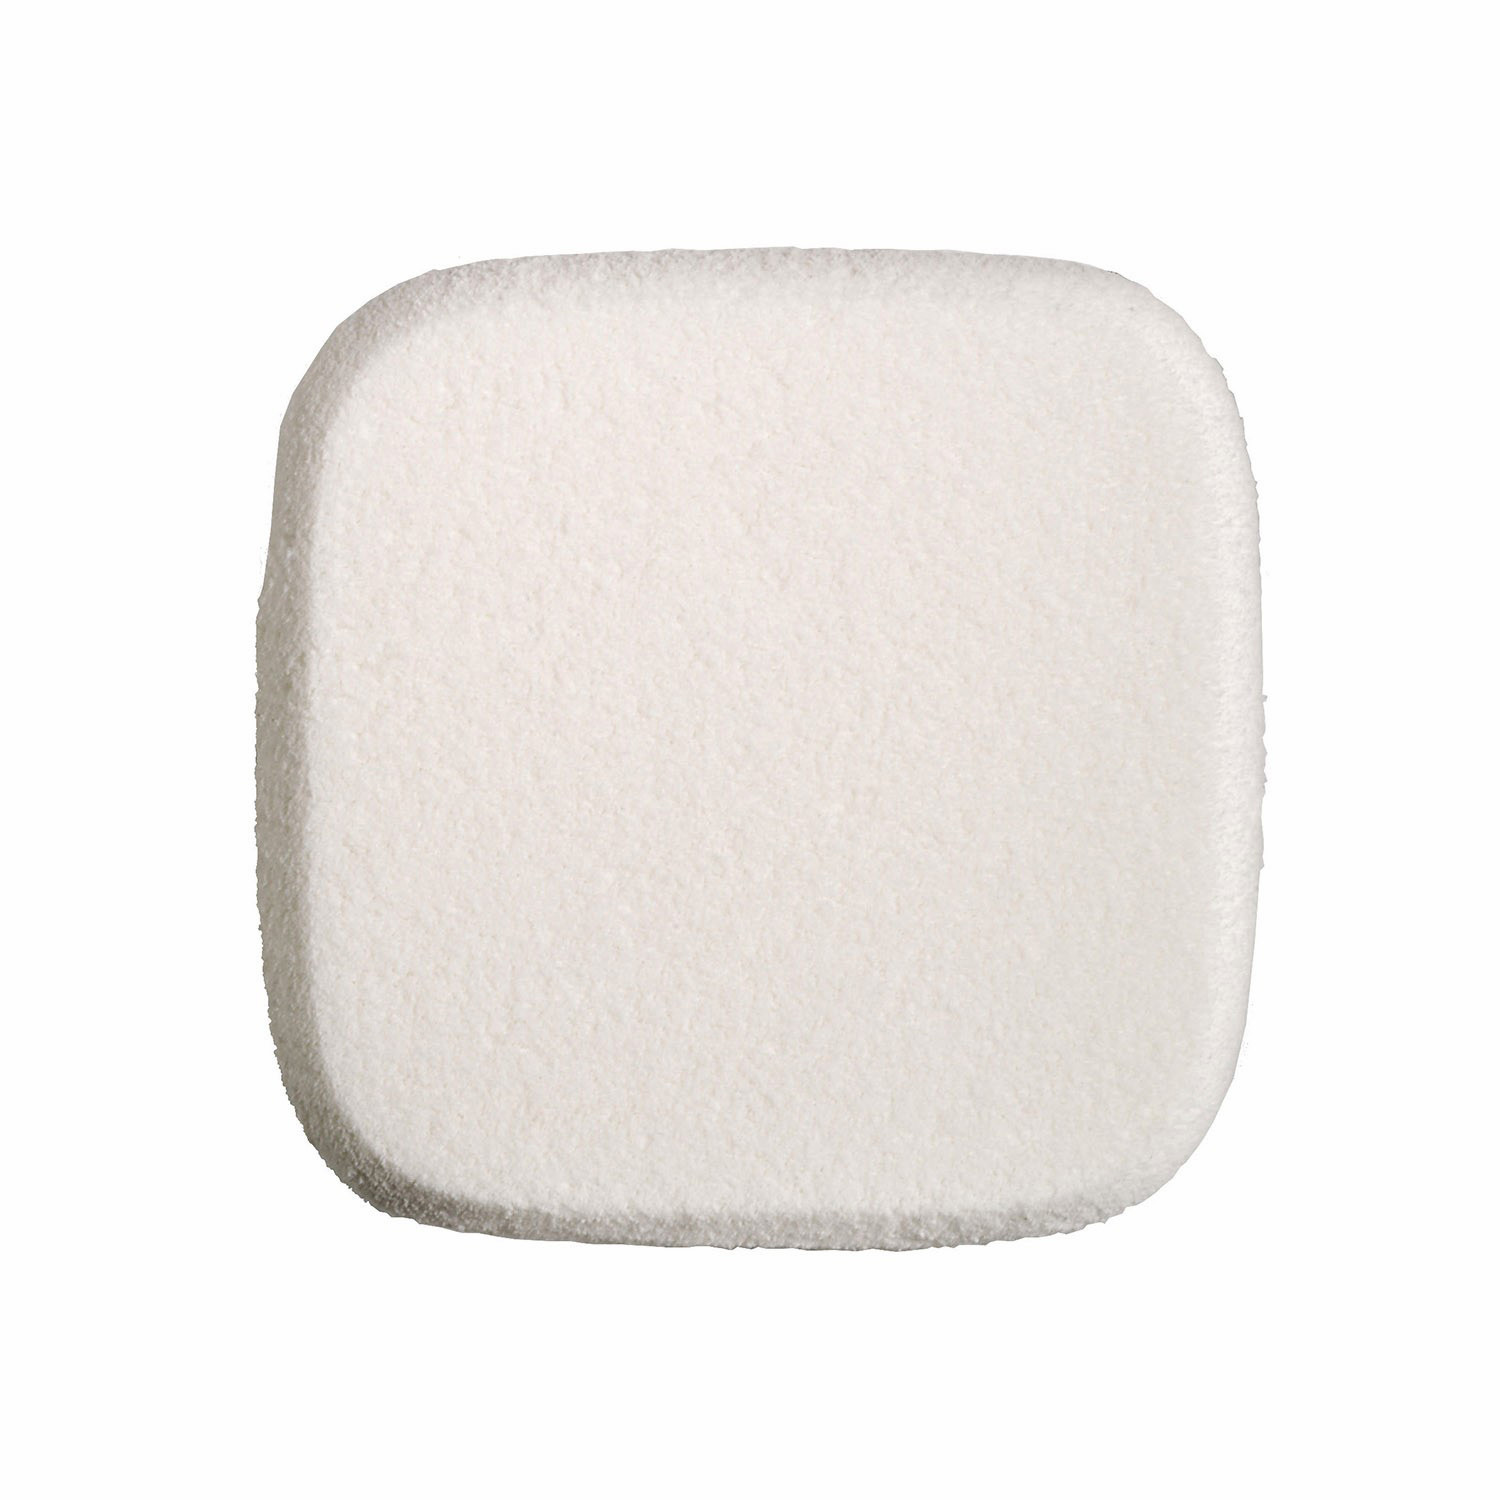 Latex Sponge (Mini Size), White, large image number 0